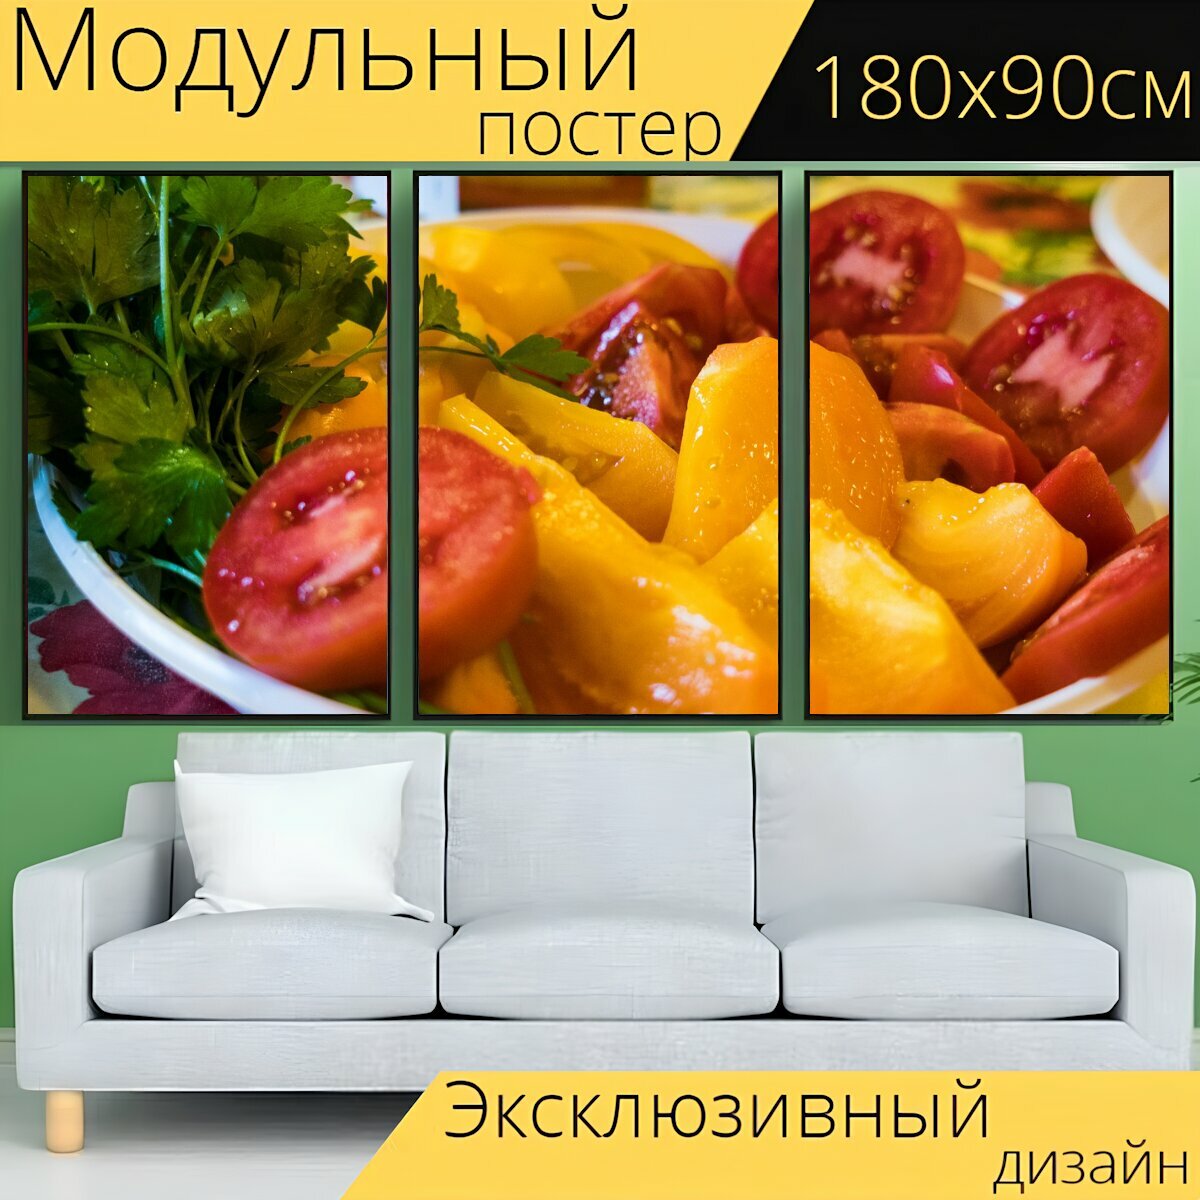 Модульный постер "Помидоры, овощи, резанные" 180 x 90 см. для интерьера